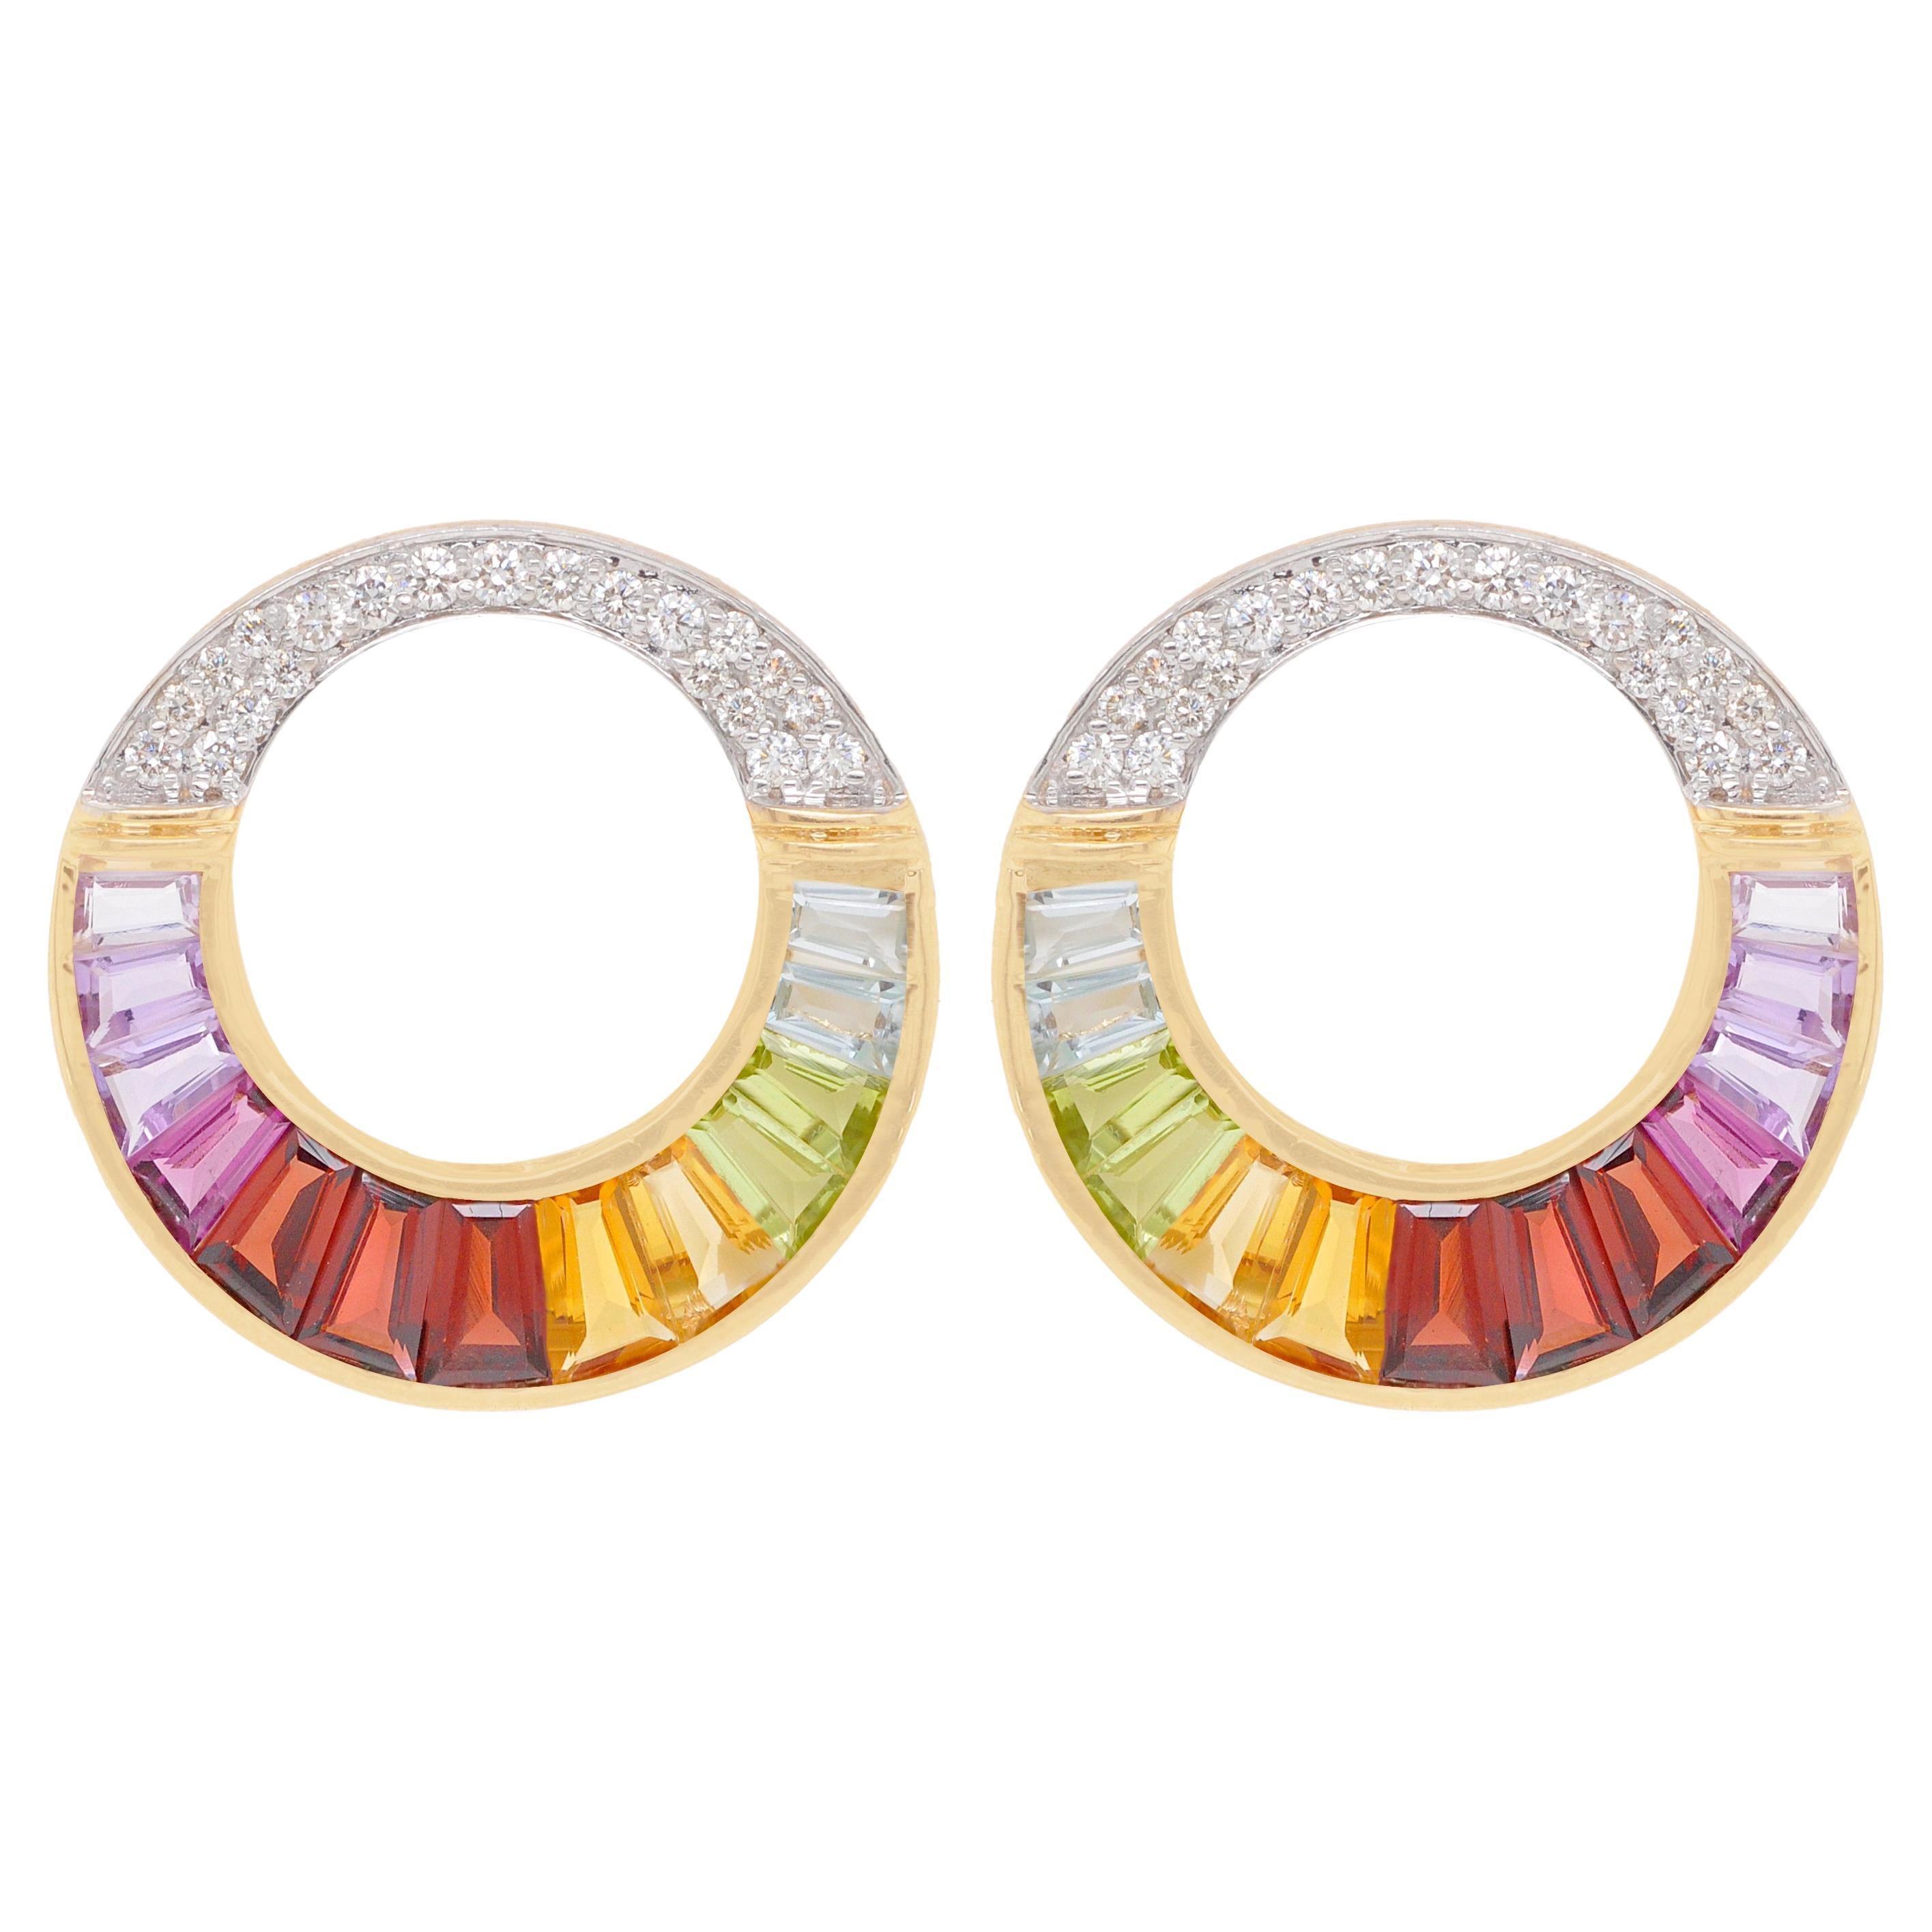 Clous d'oreilles circulaires en or 18 carats sertis de diamants baguettes arc-en-ciel